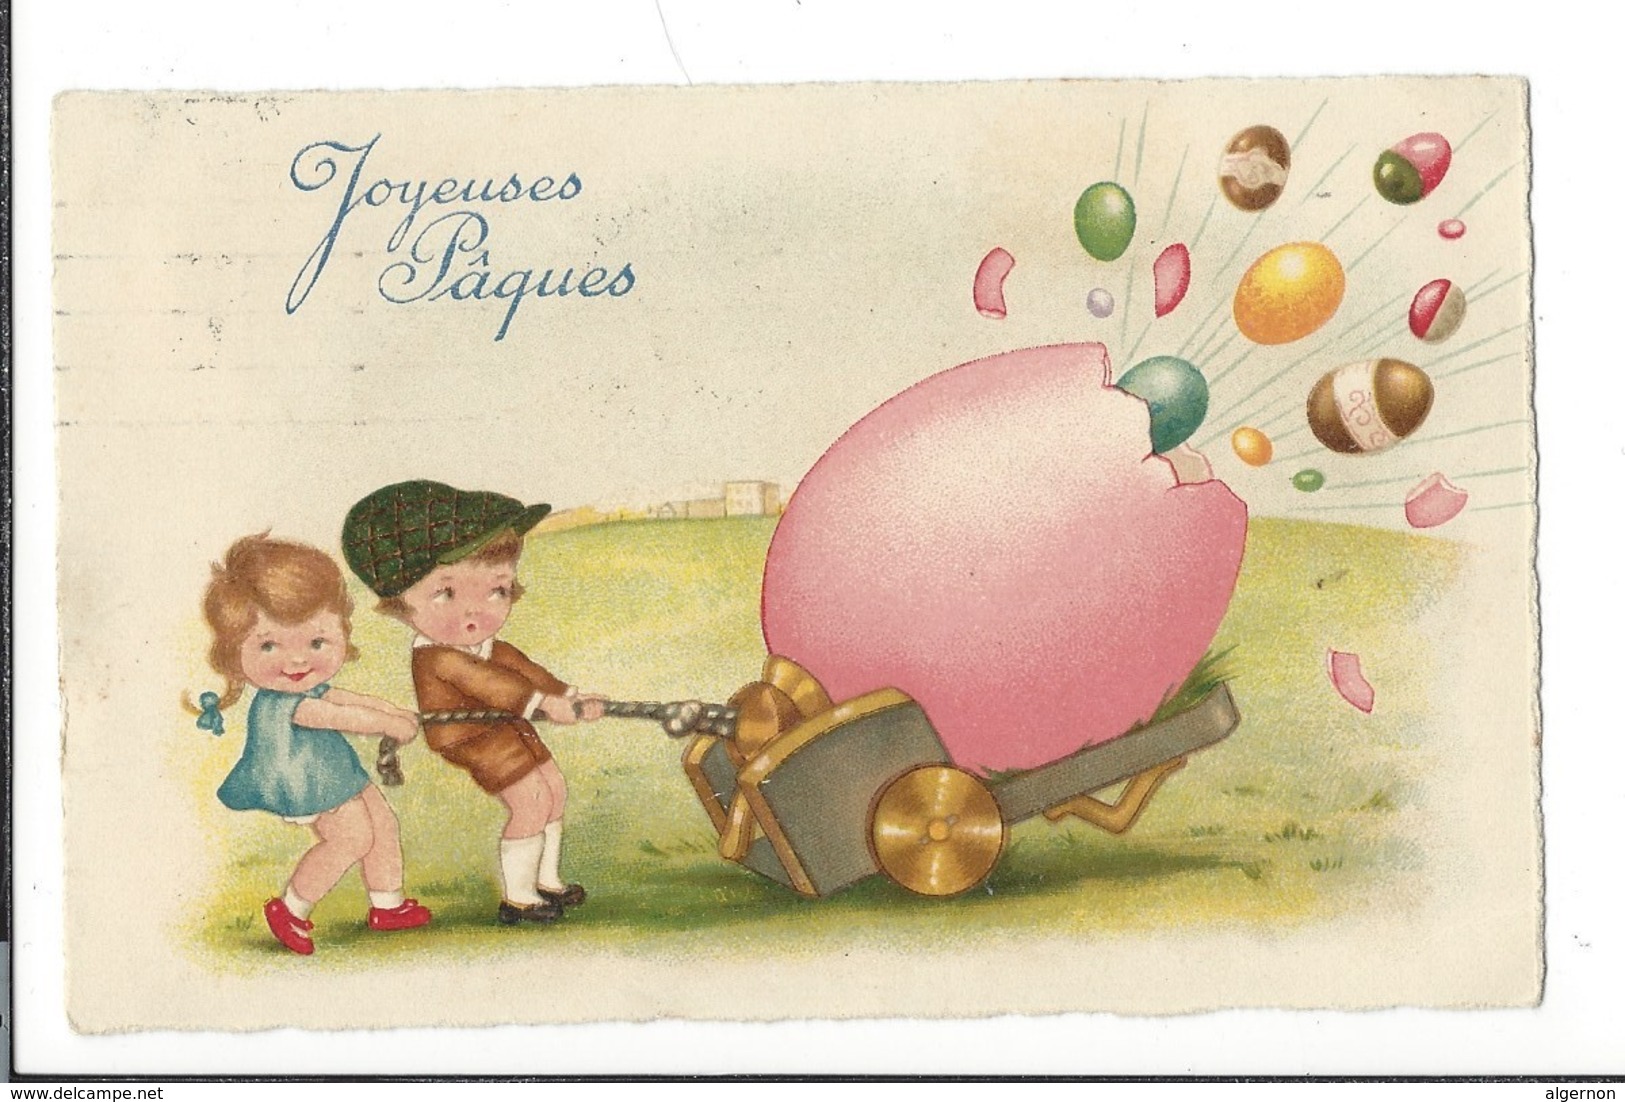 16798 - Joyeuses Pâques  Le Canon à Oeufs Tiré Par Enfants Cachet La Chaux De Fonds 1930 - Pâques